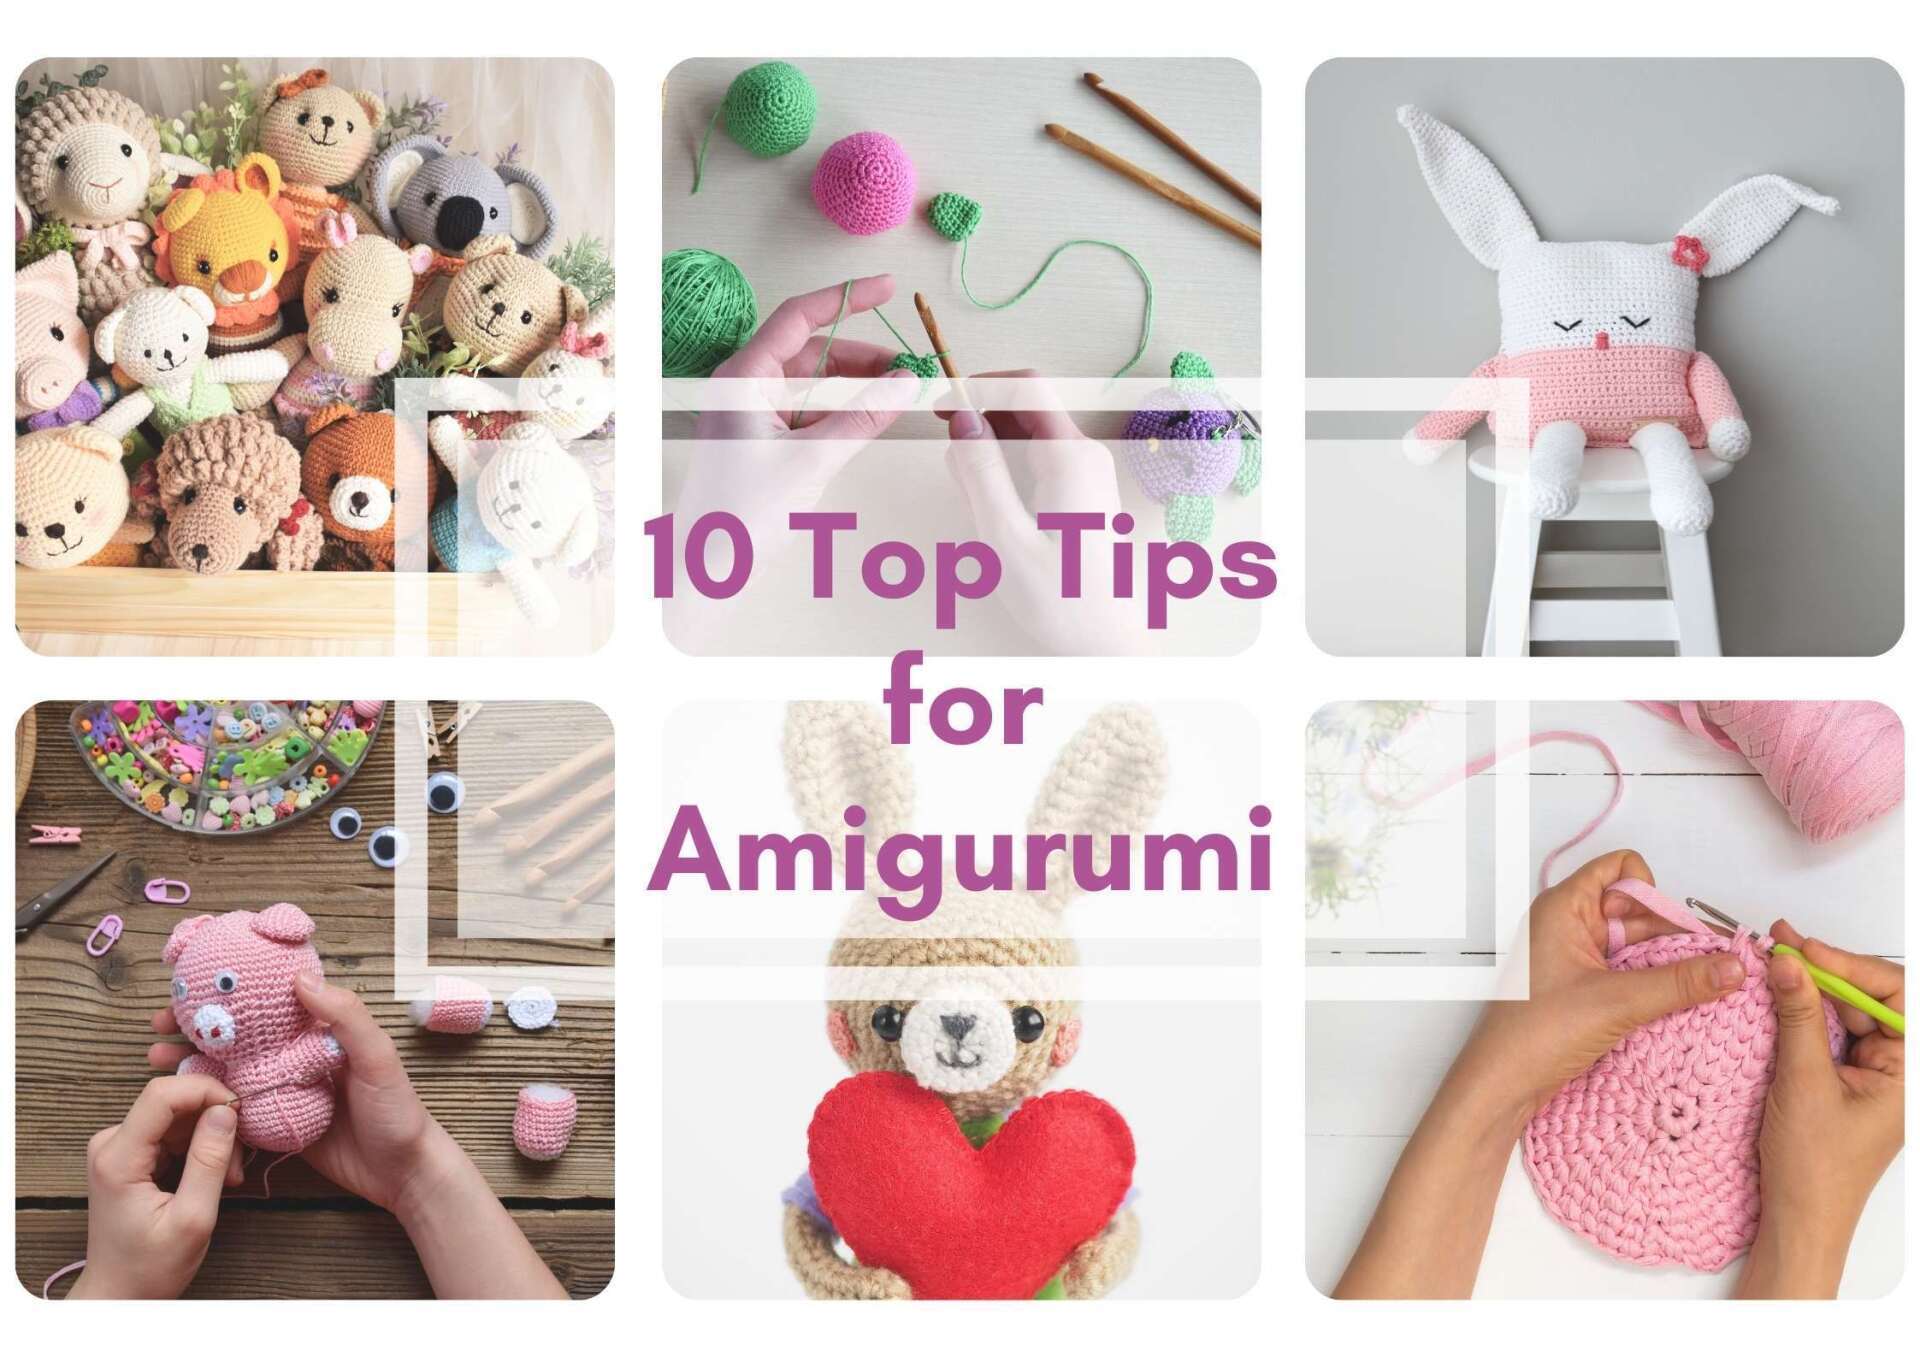 10 Top Tips - amigurumi for beginners